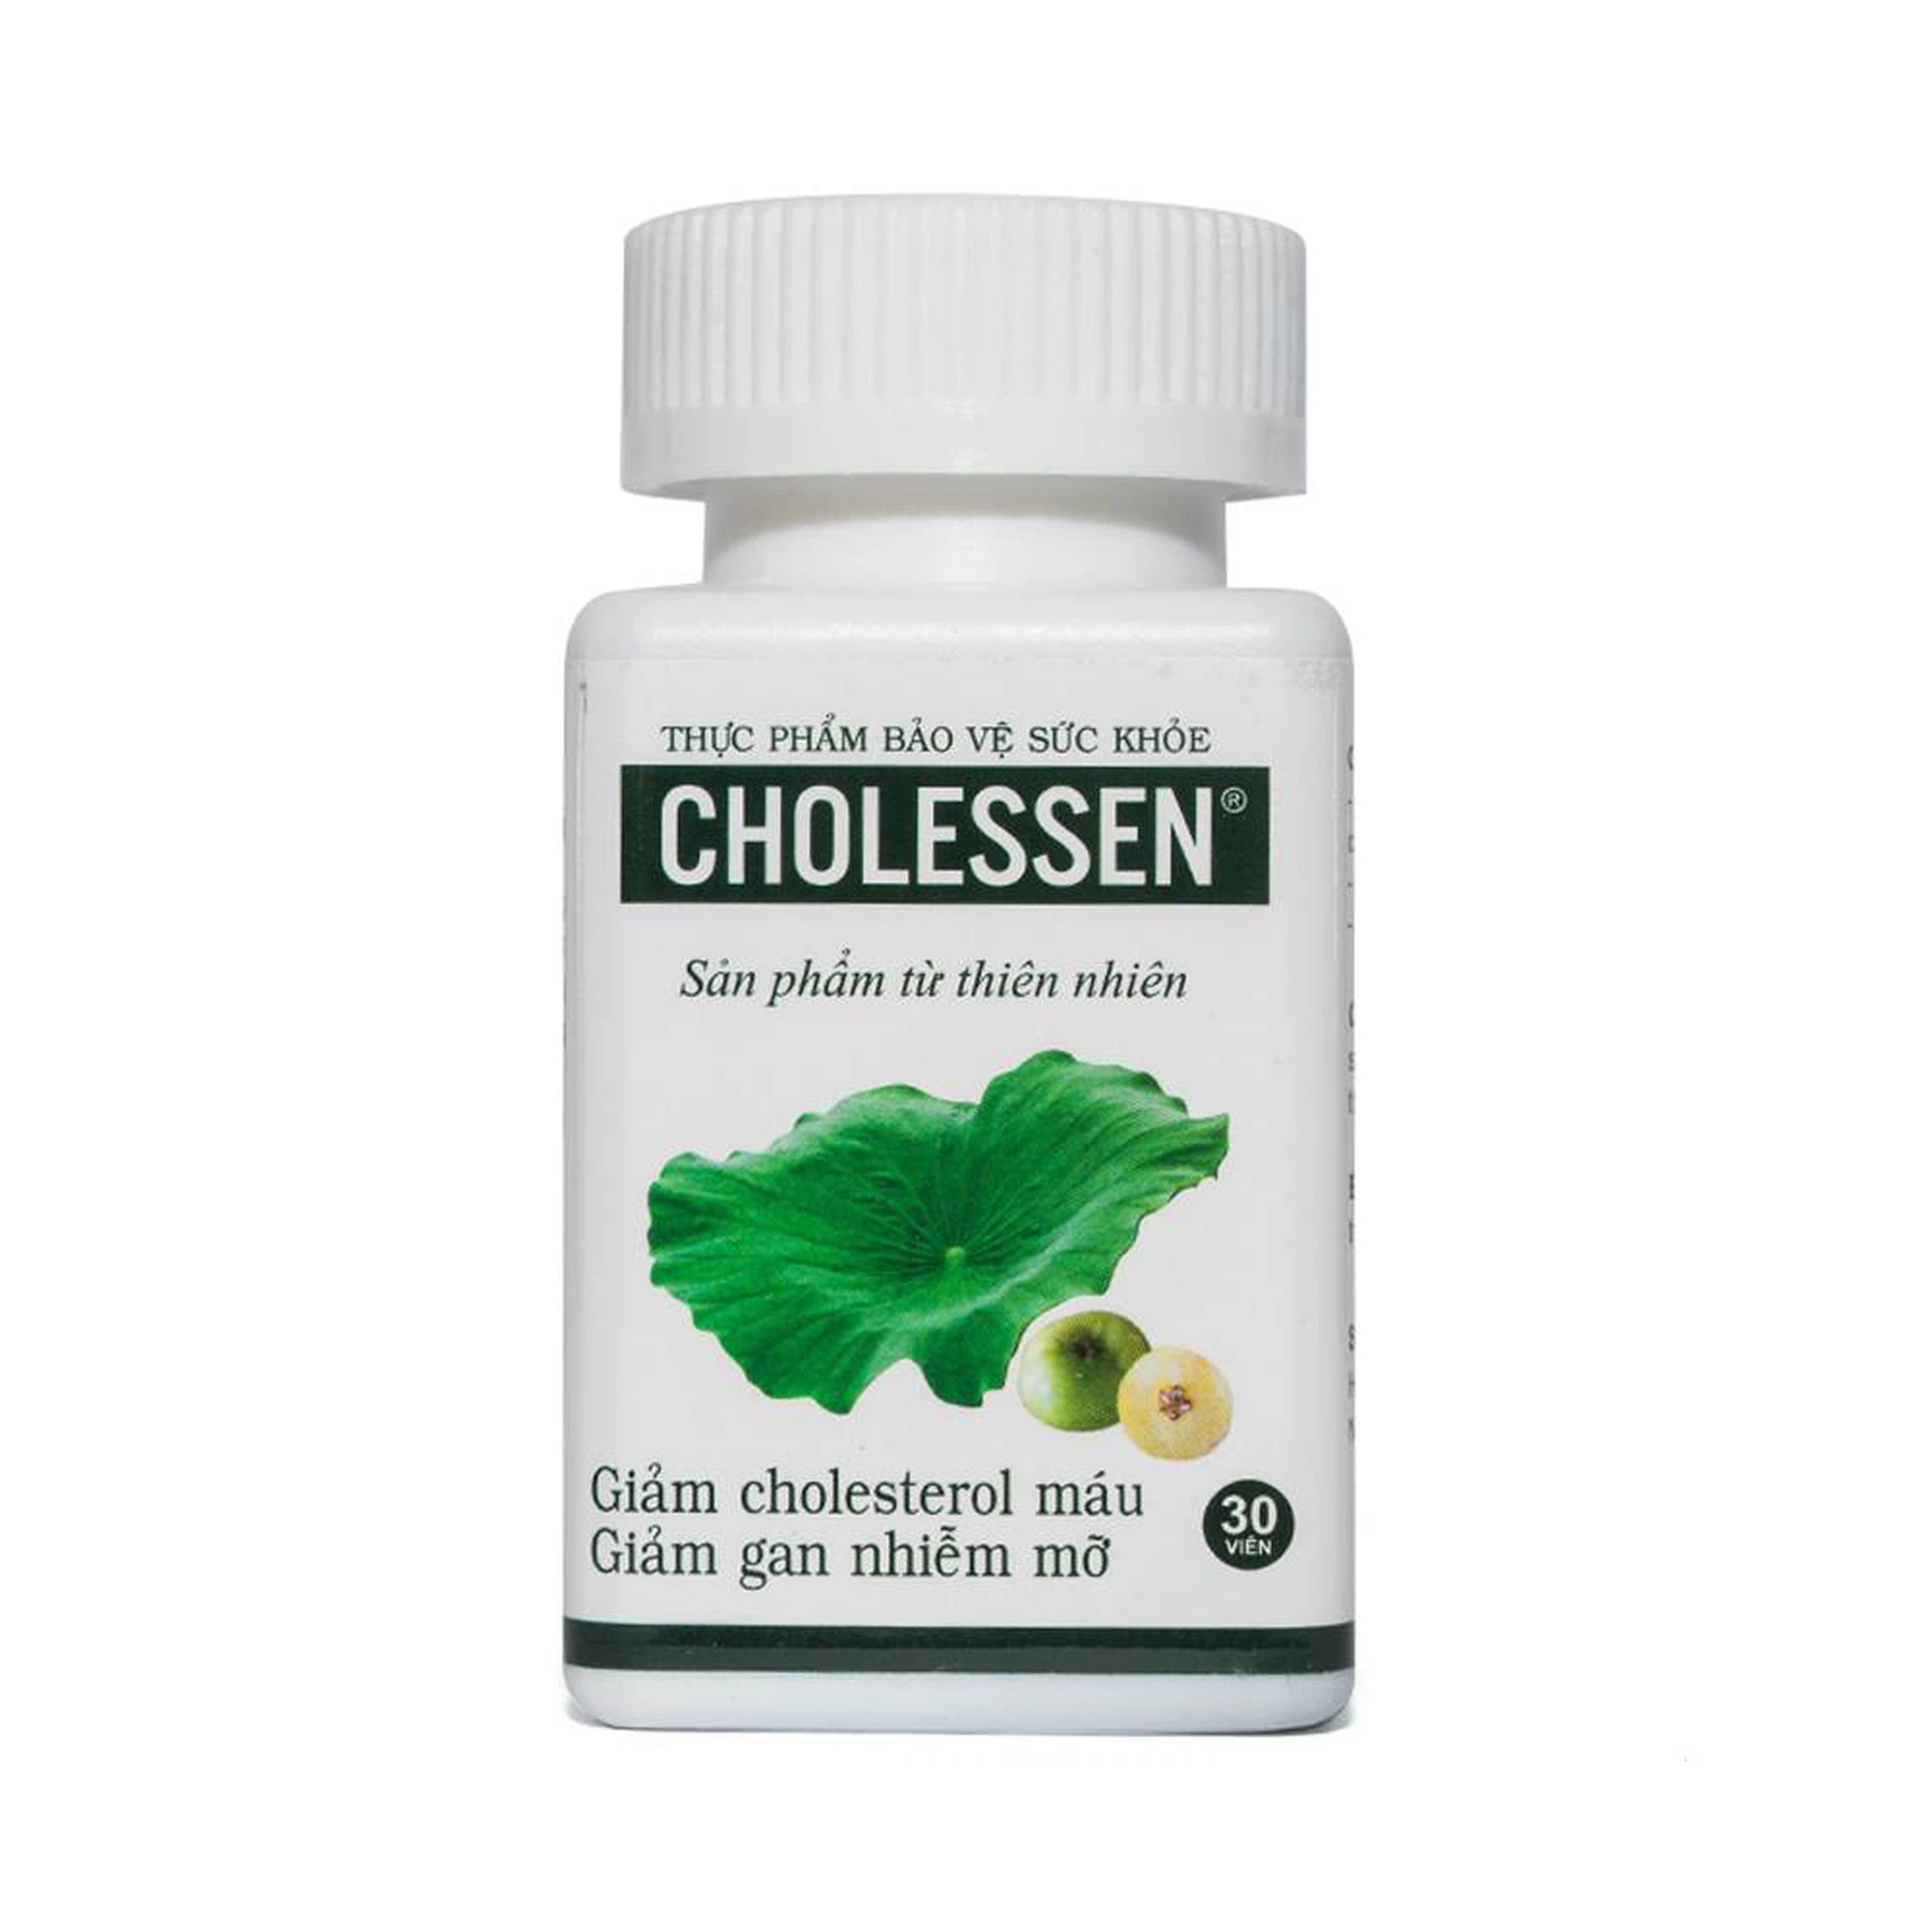 Viên uống Cholessen Decotra giảm cholesterol máu, giảm gan nhiễm mỡ (30 viên)